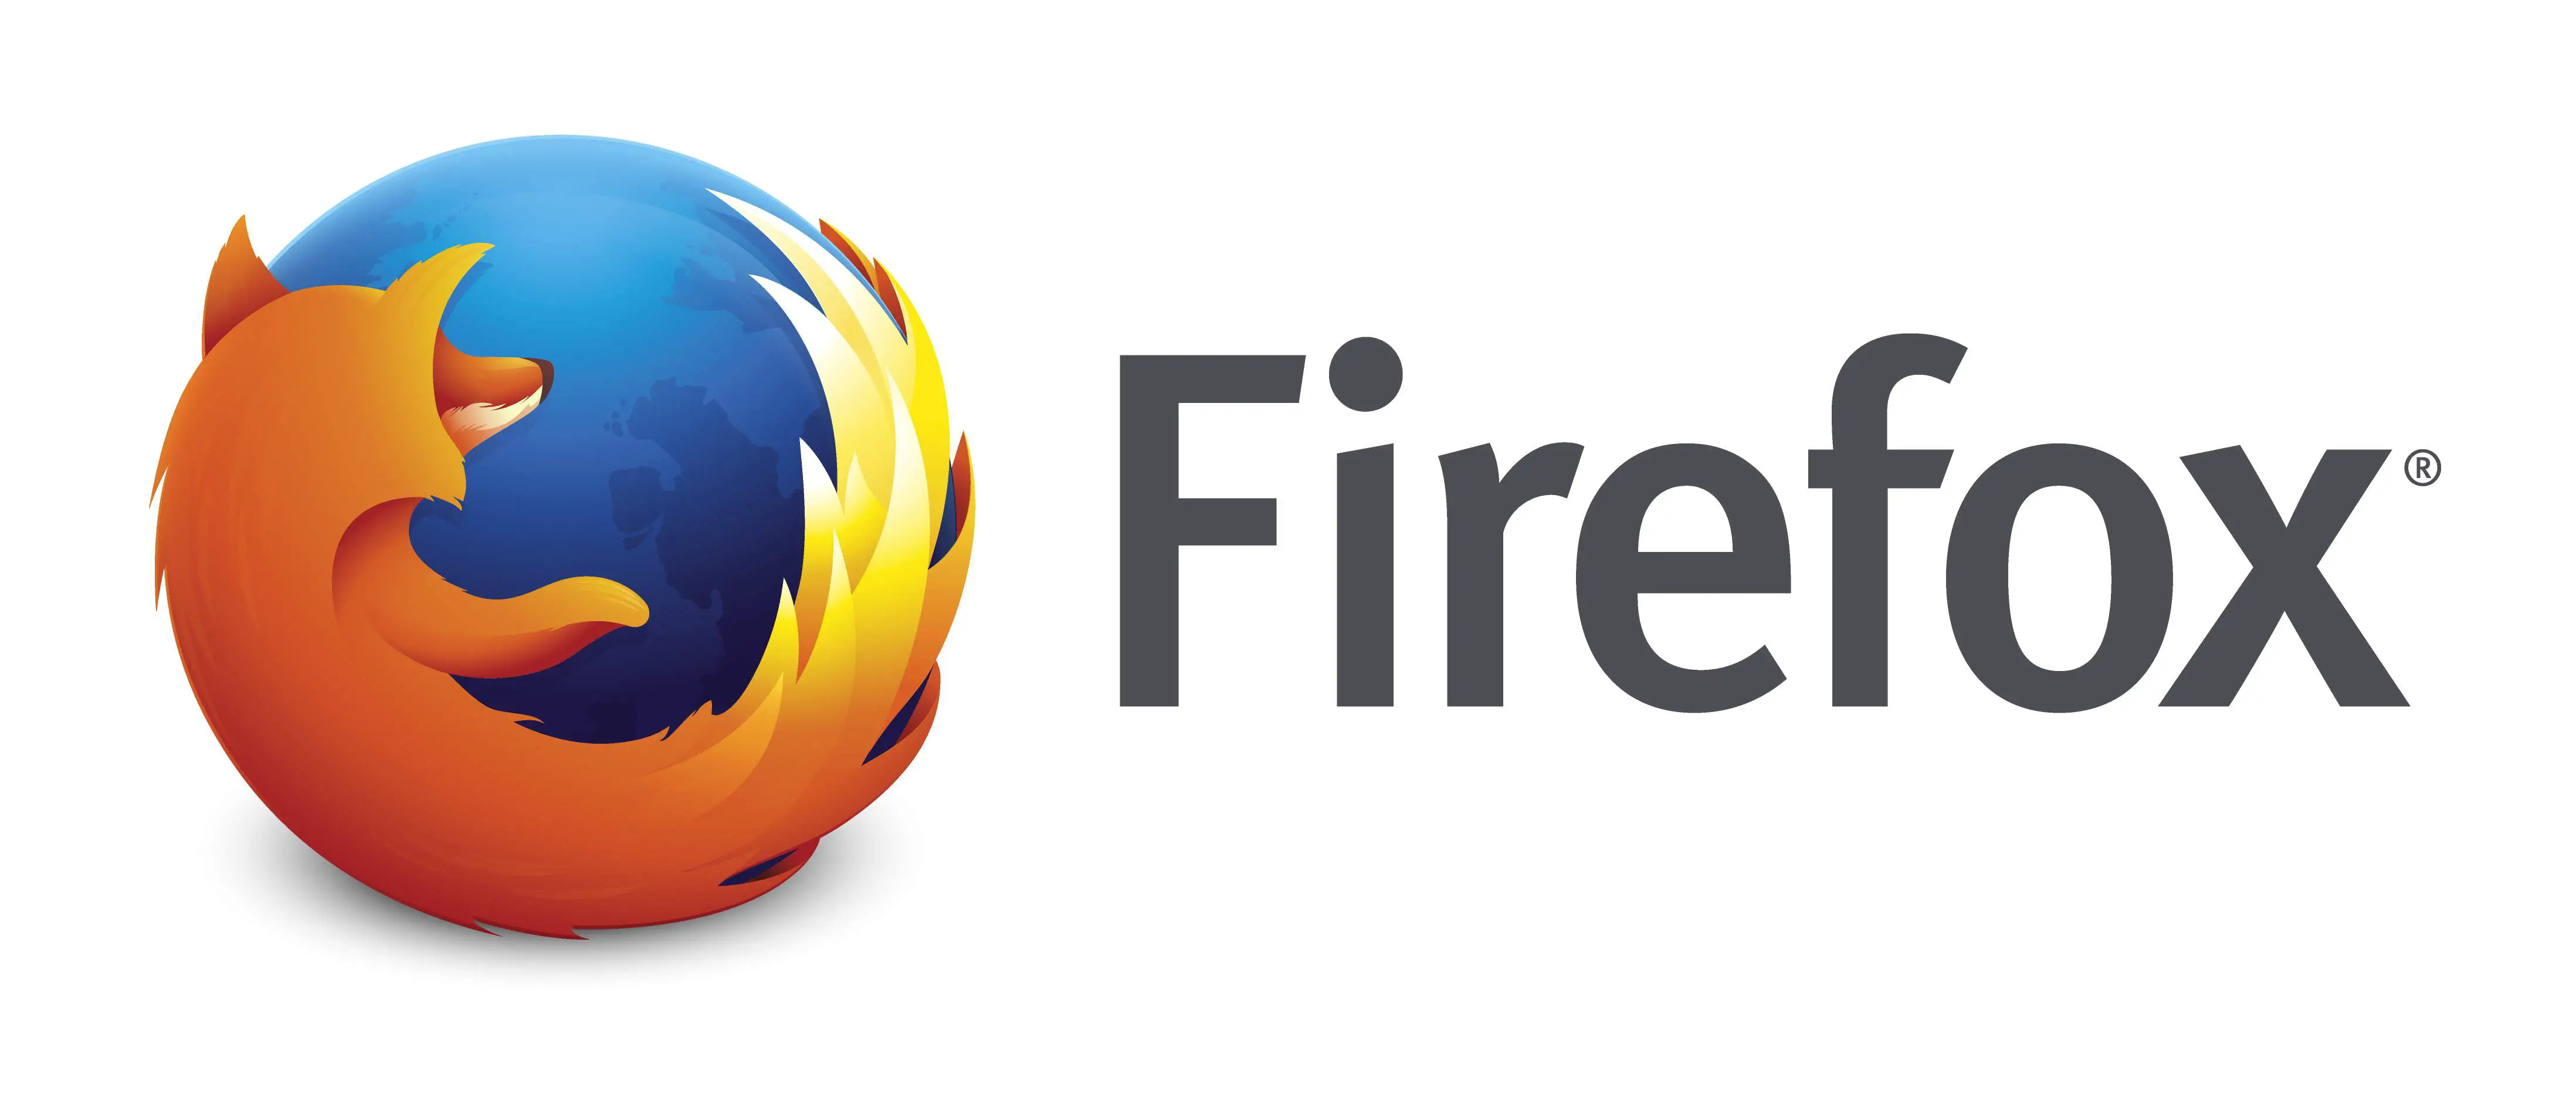 Logotipo oficial do Firefox.